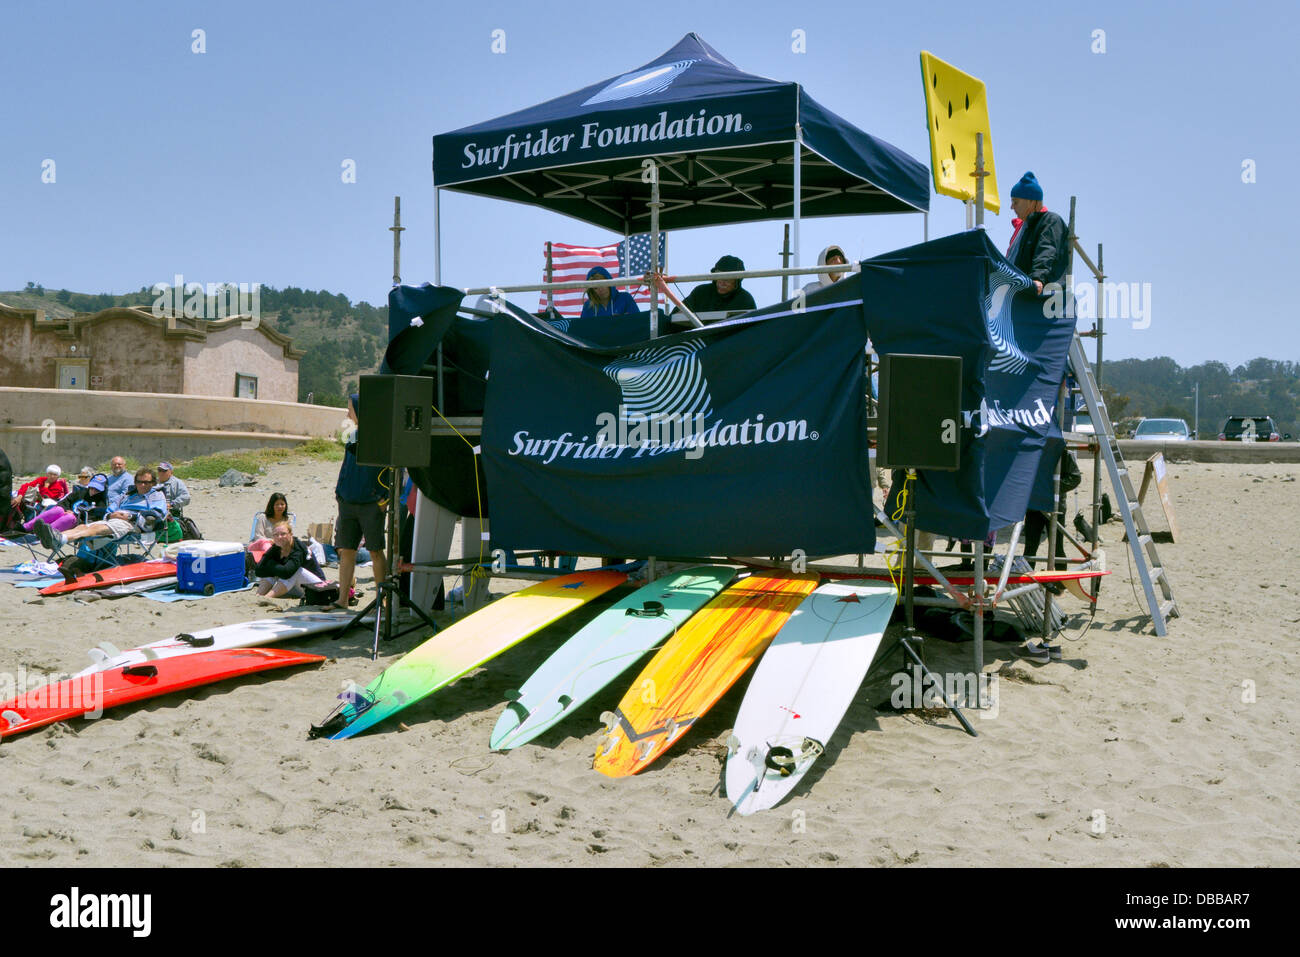 Les juges s'élèvent à une compétition de surf sur une plage de Californie Banque D'Images